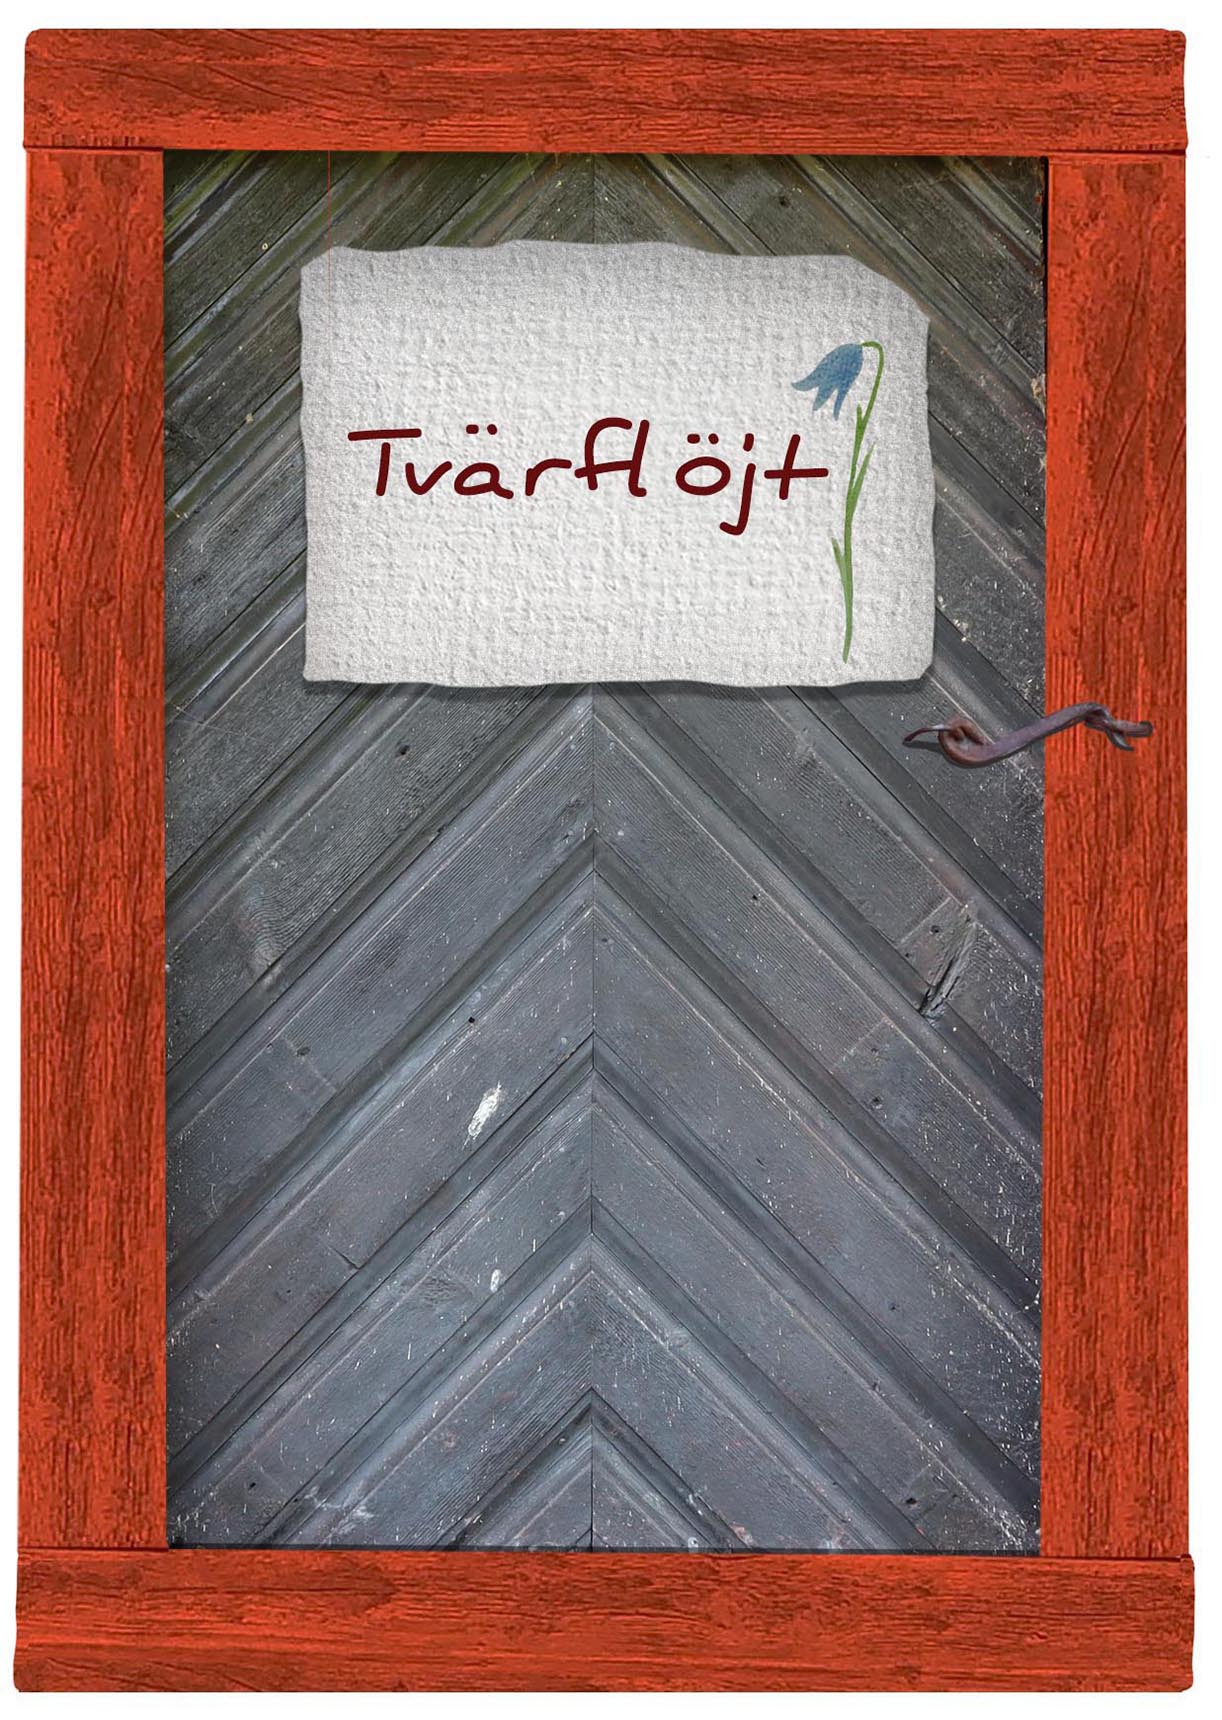 Svart gammaldags trädörr med faluröd karm. På dörren en skylt med tecknad blåklocka där det står Tvärflöjt.